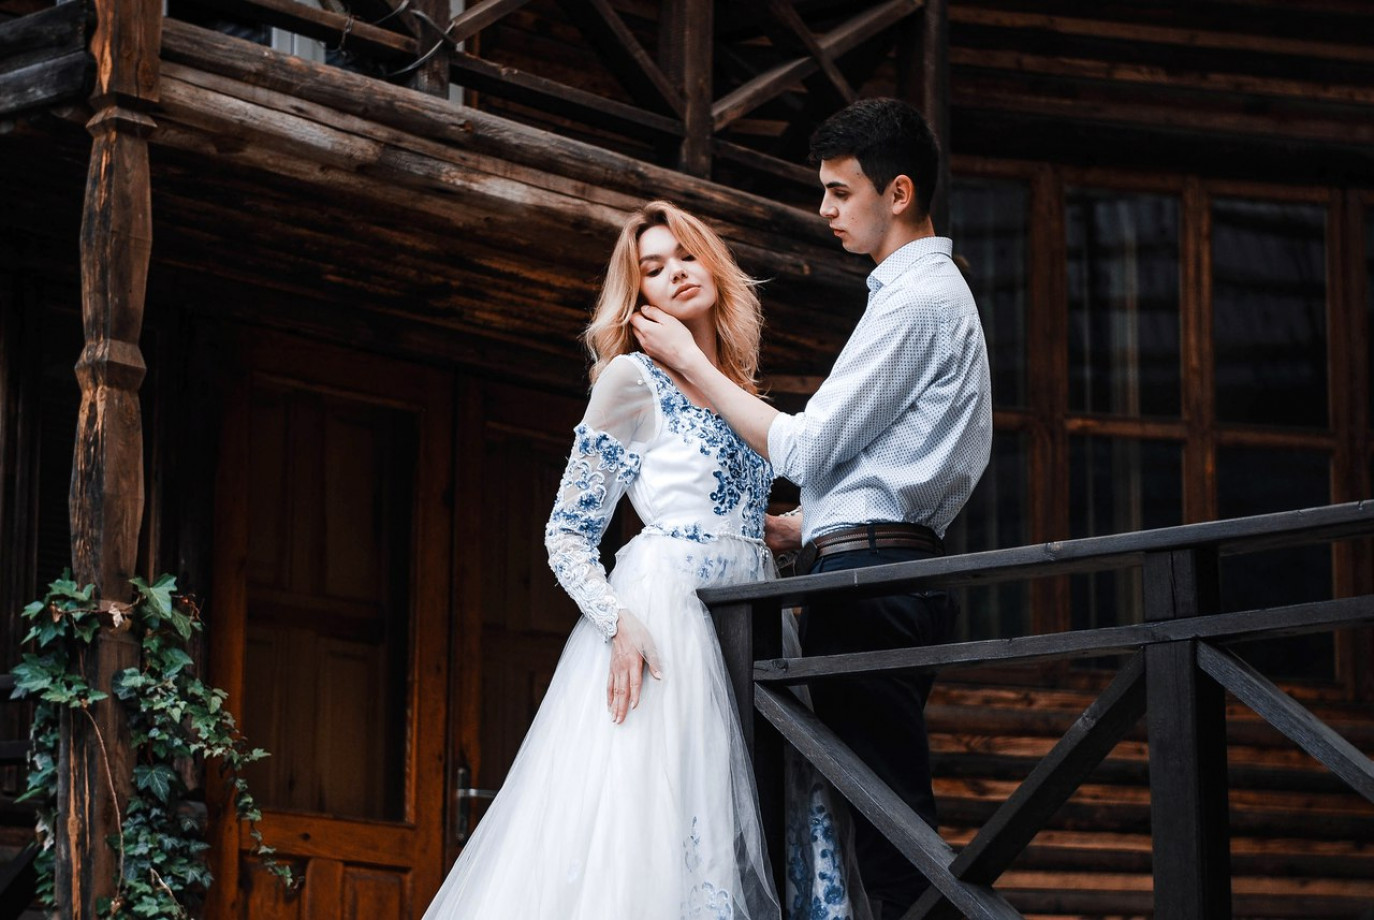 zdjęcia wroclaw fotograf andriy-kravets portfolio zdjecia slubne inspiracje wesele plener slubny sesja slubna